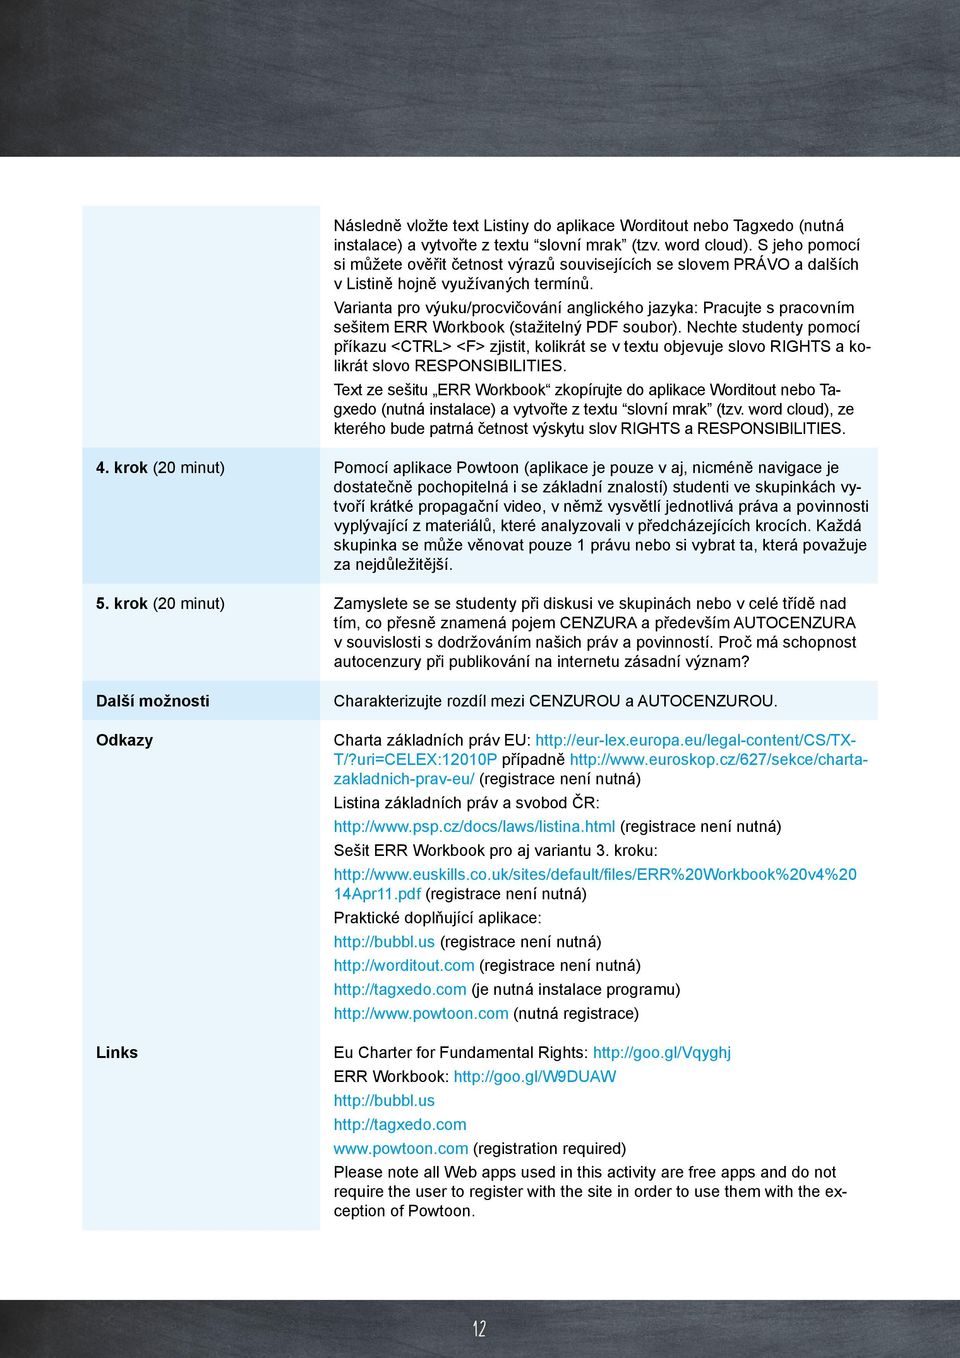 Varianta pro výuku/procvičování anglického jazyka: Pracujte s pracovním sešitem ERR Workbook (stažitelný PDF soubor).